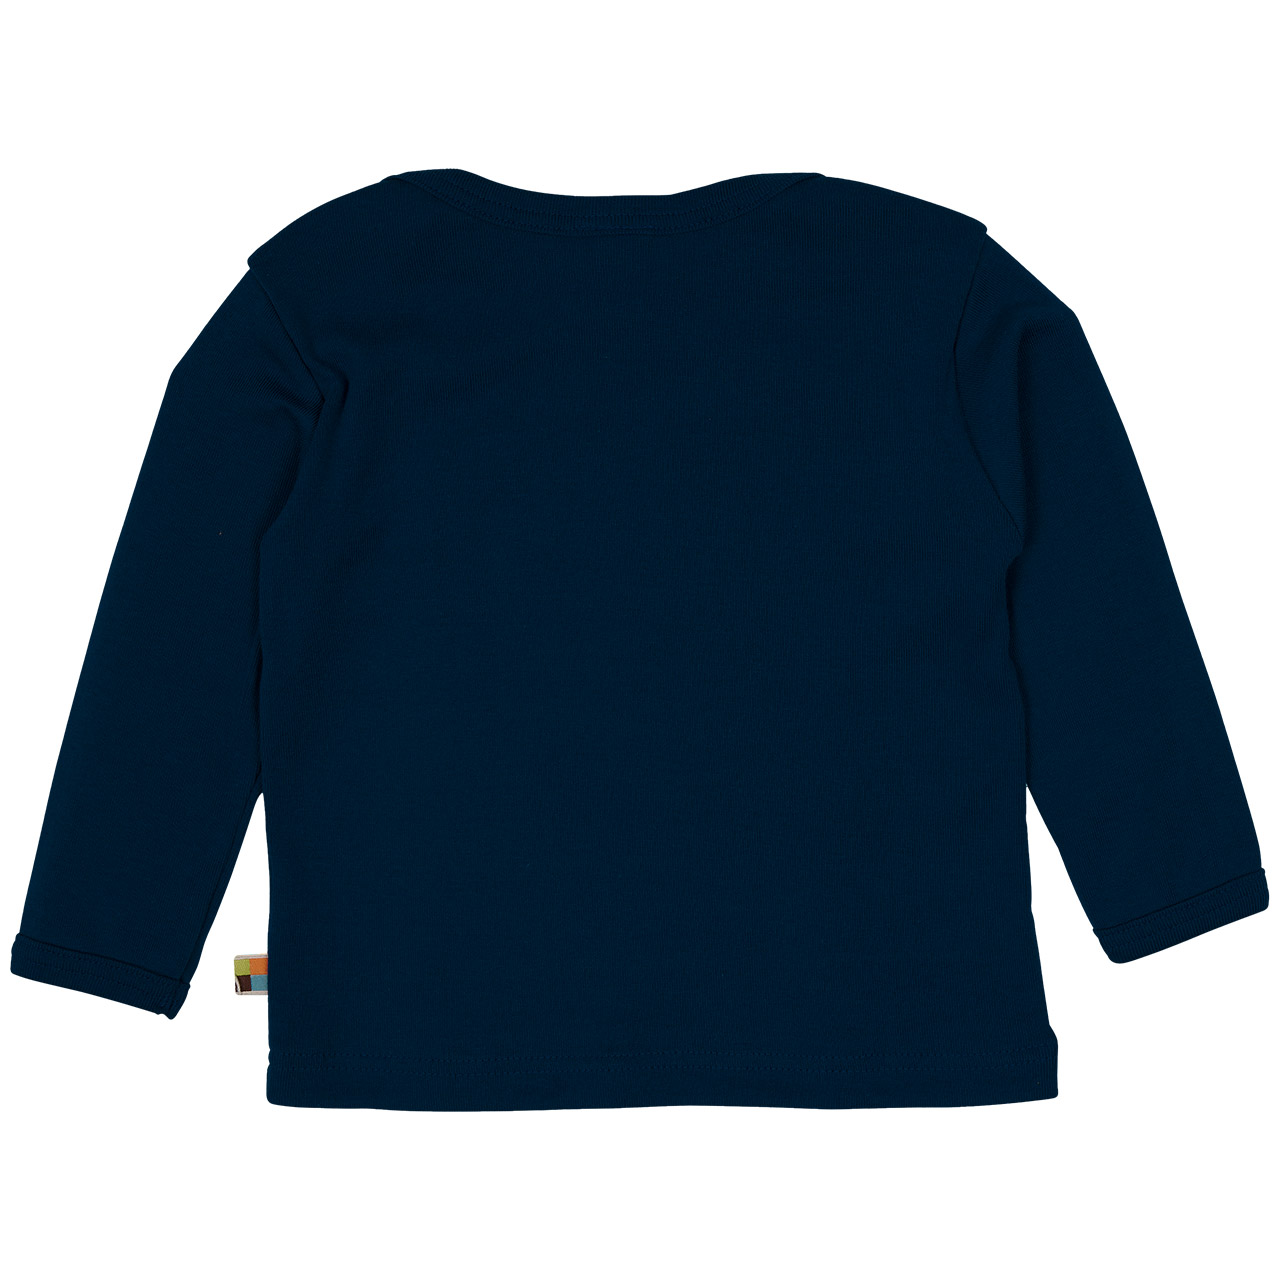 Feinripp Shirt weich und elastisch 100% Baumwolle marine